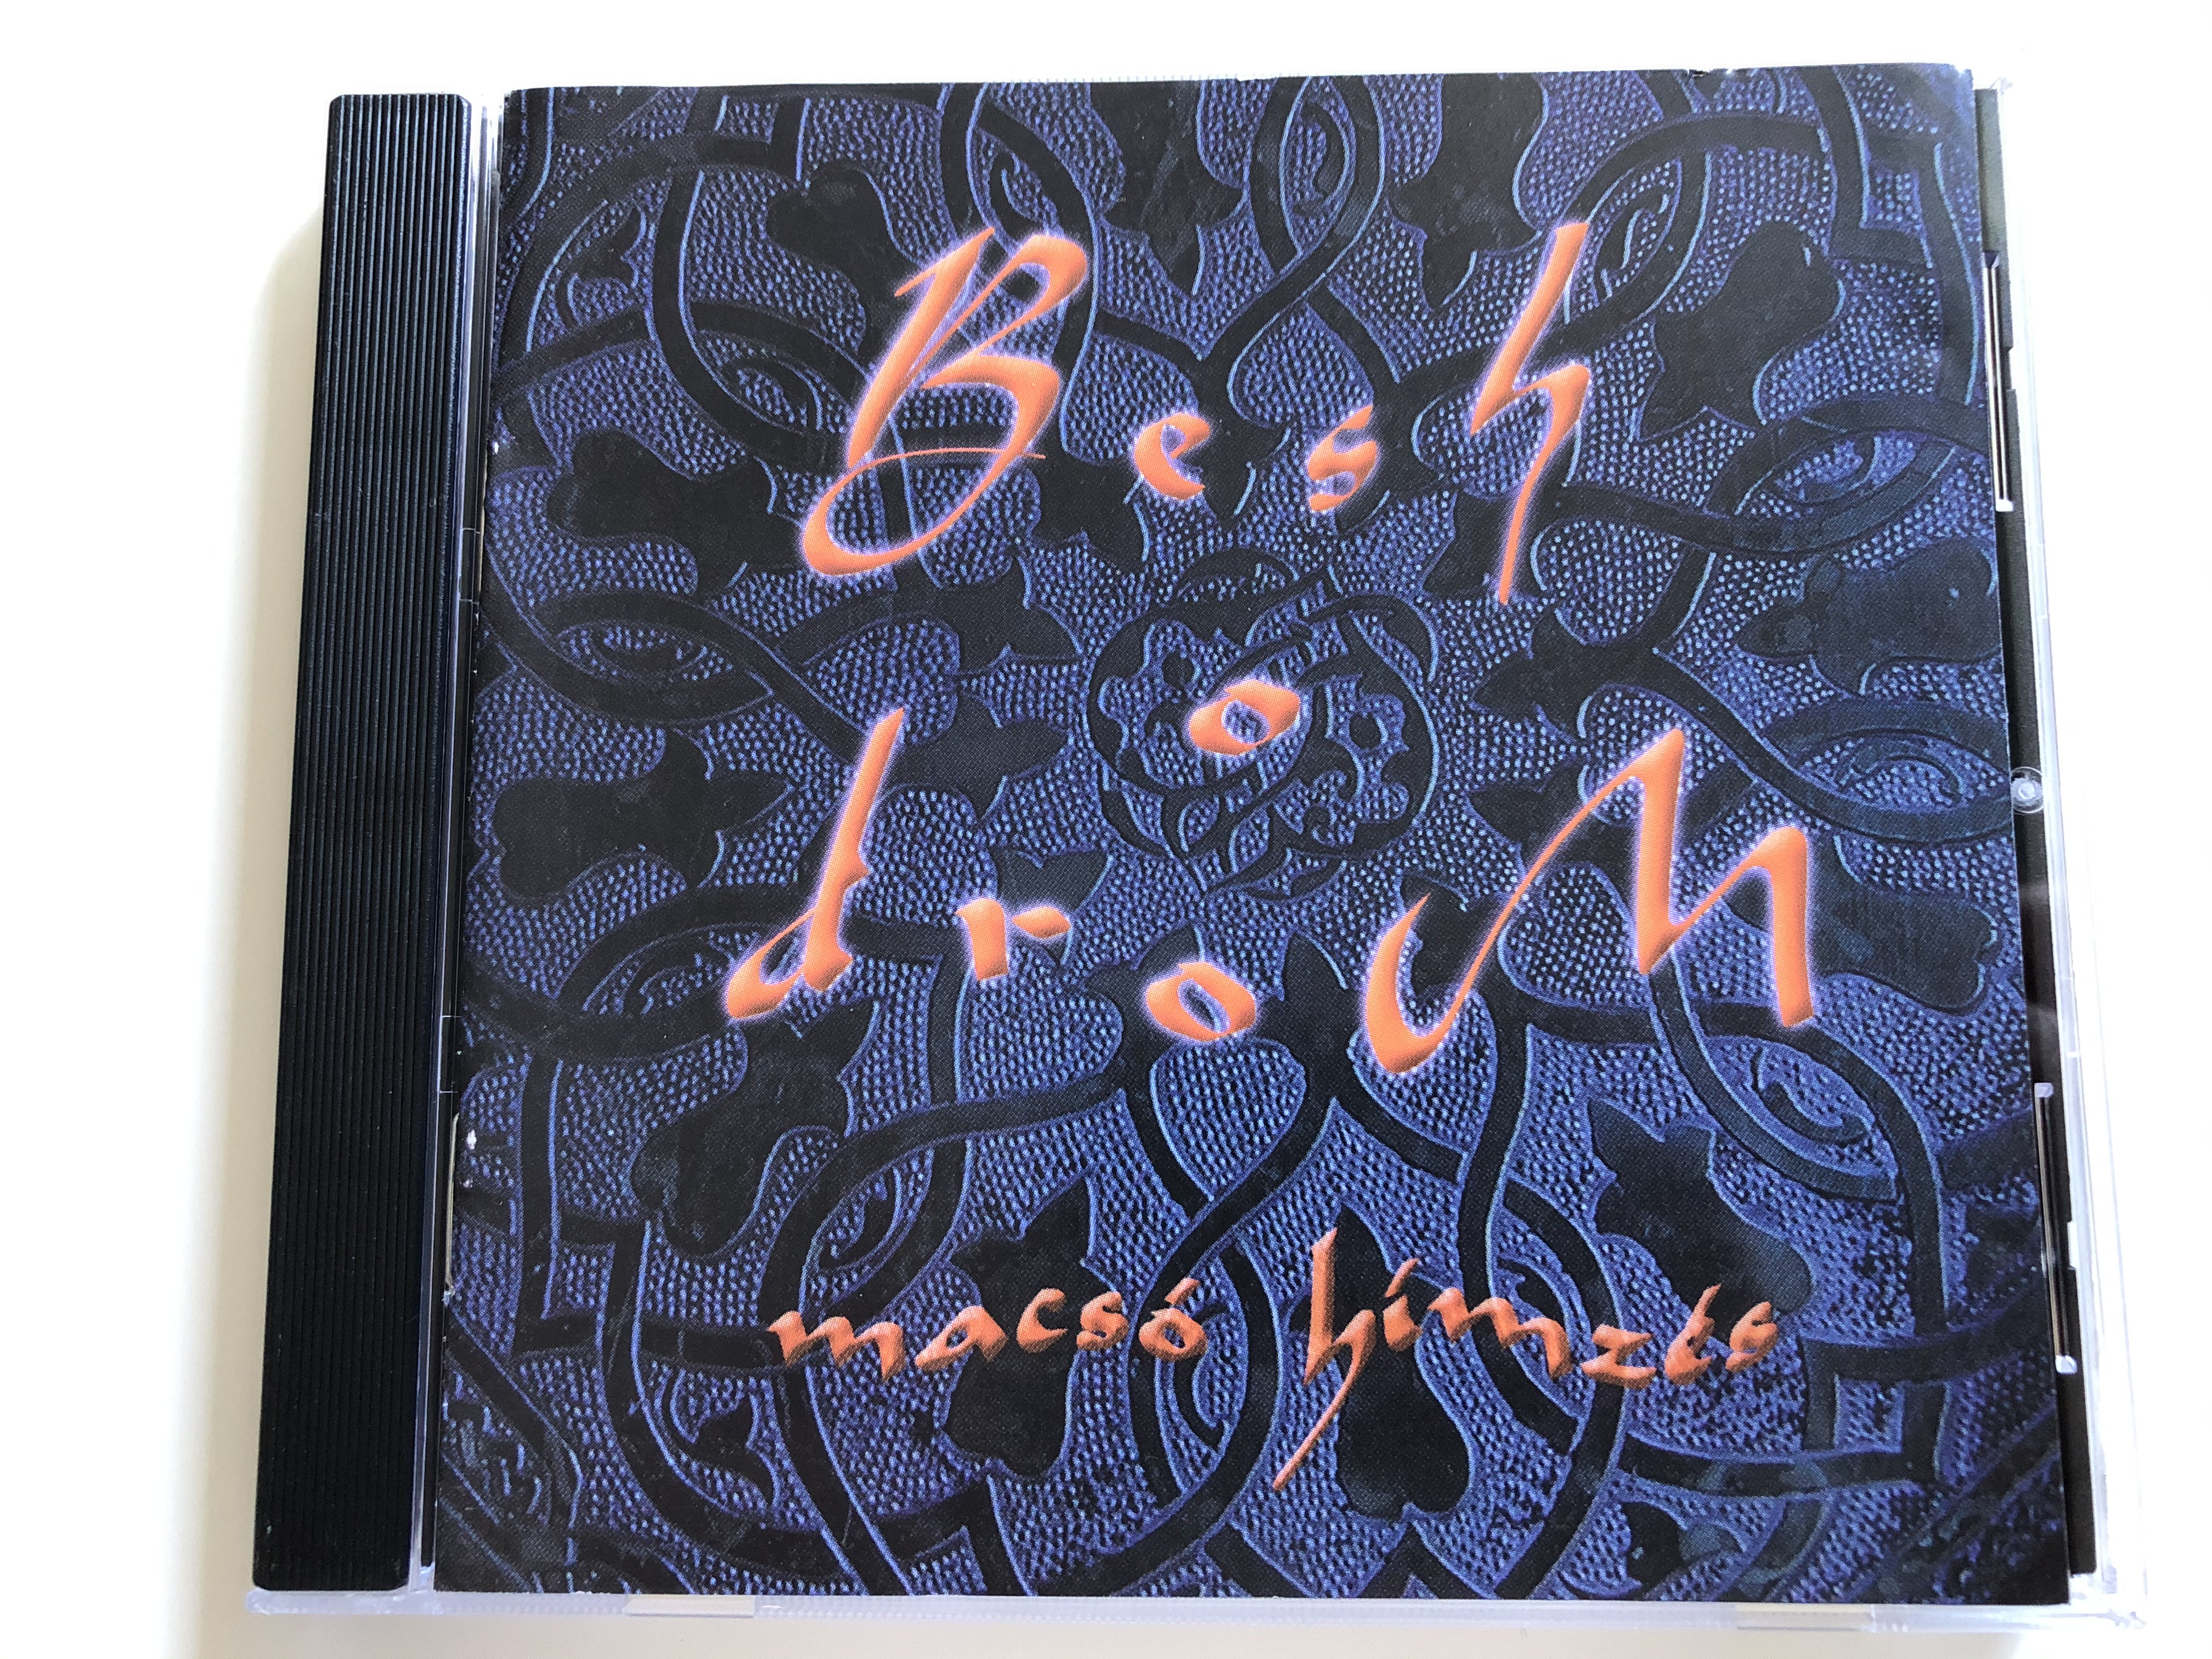 besh-o-drom-macs-h-mz-s-fon-records-audio-cd-2000-fa-082-2-1-.jpg